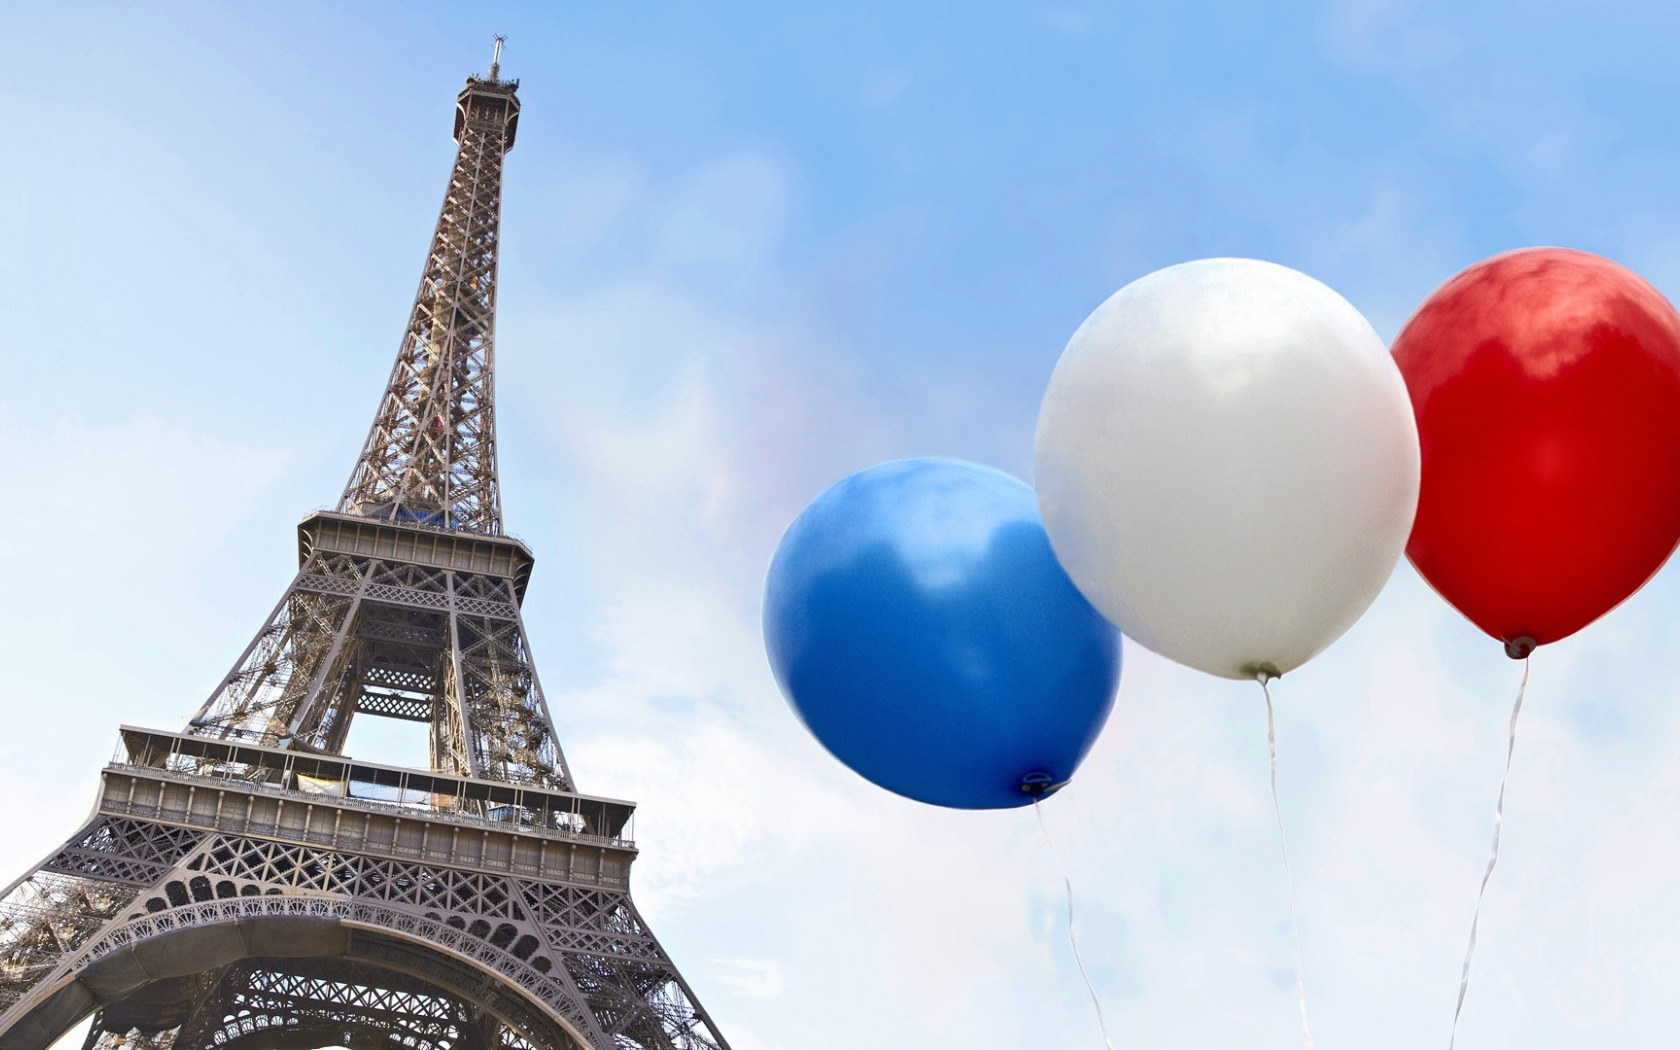 Шарами парижа. Париж и шарики. Франция презентация. С днем рождения Франция. Тема Франция.